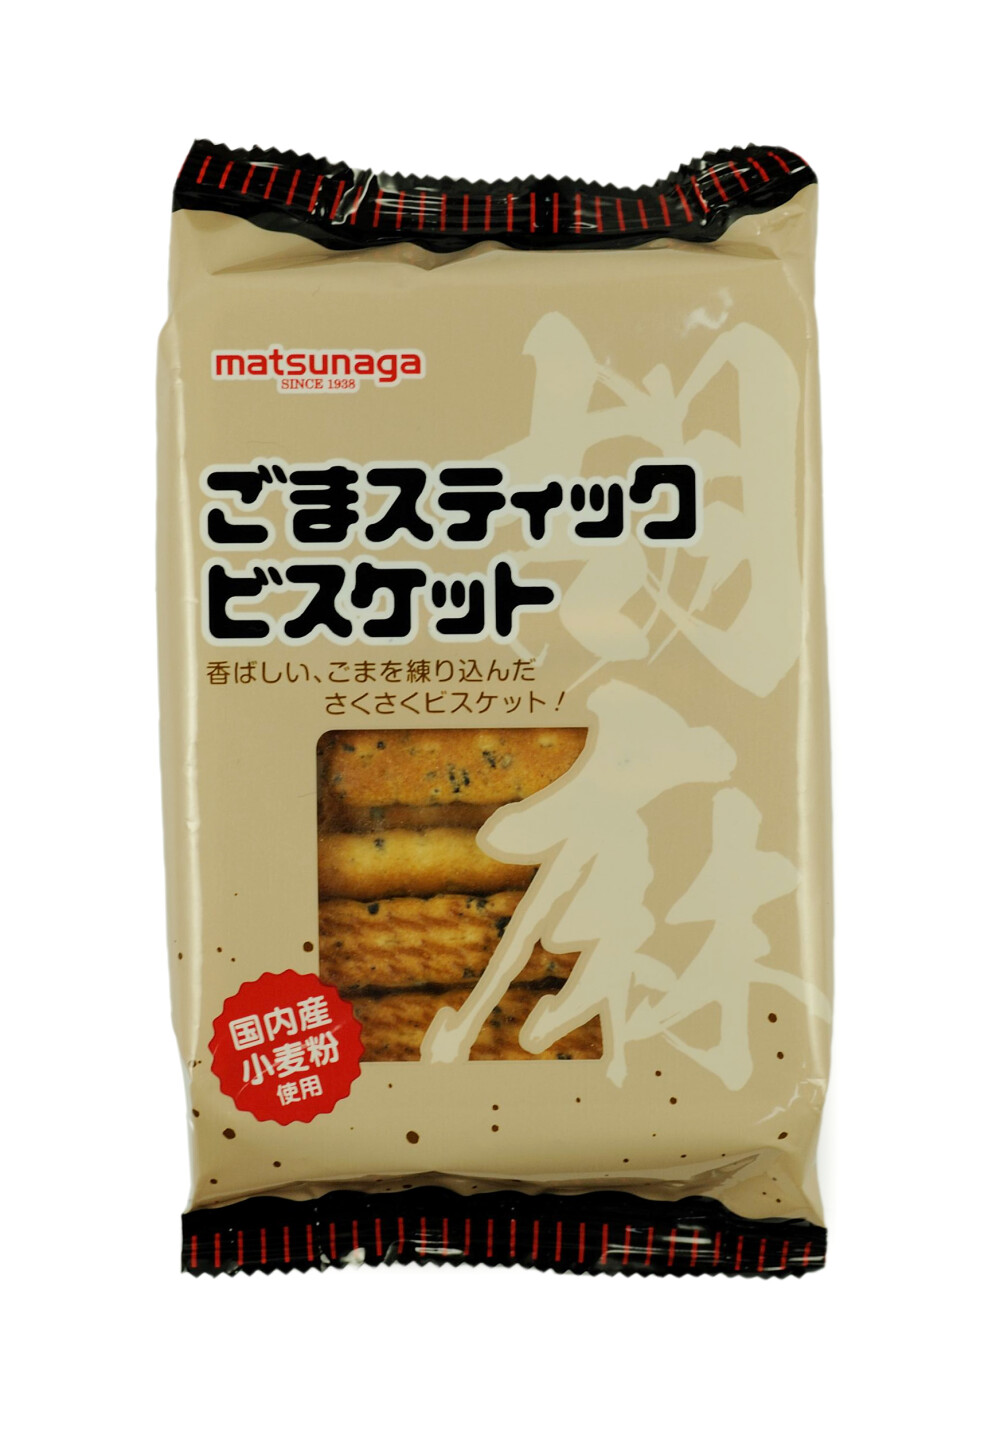 日本原装进口零食品 松永 芝麻手指饼干 90g